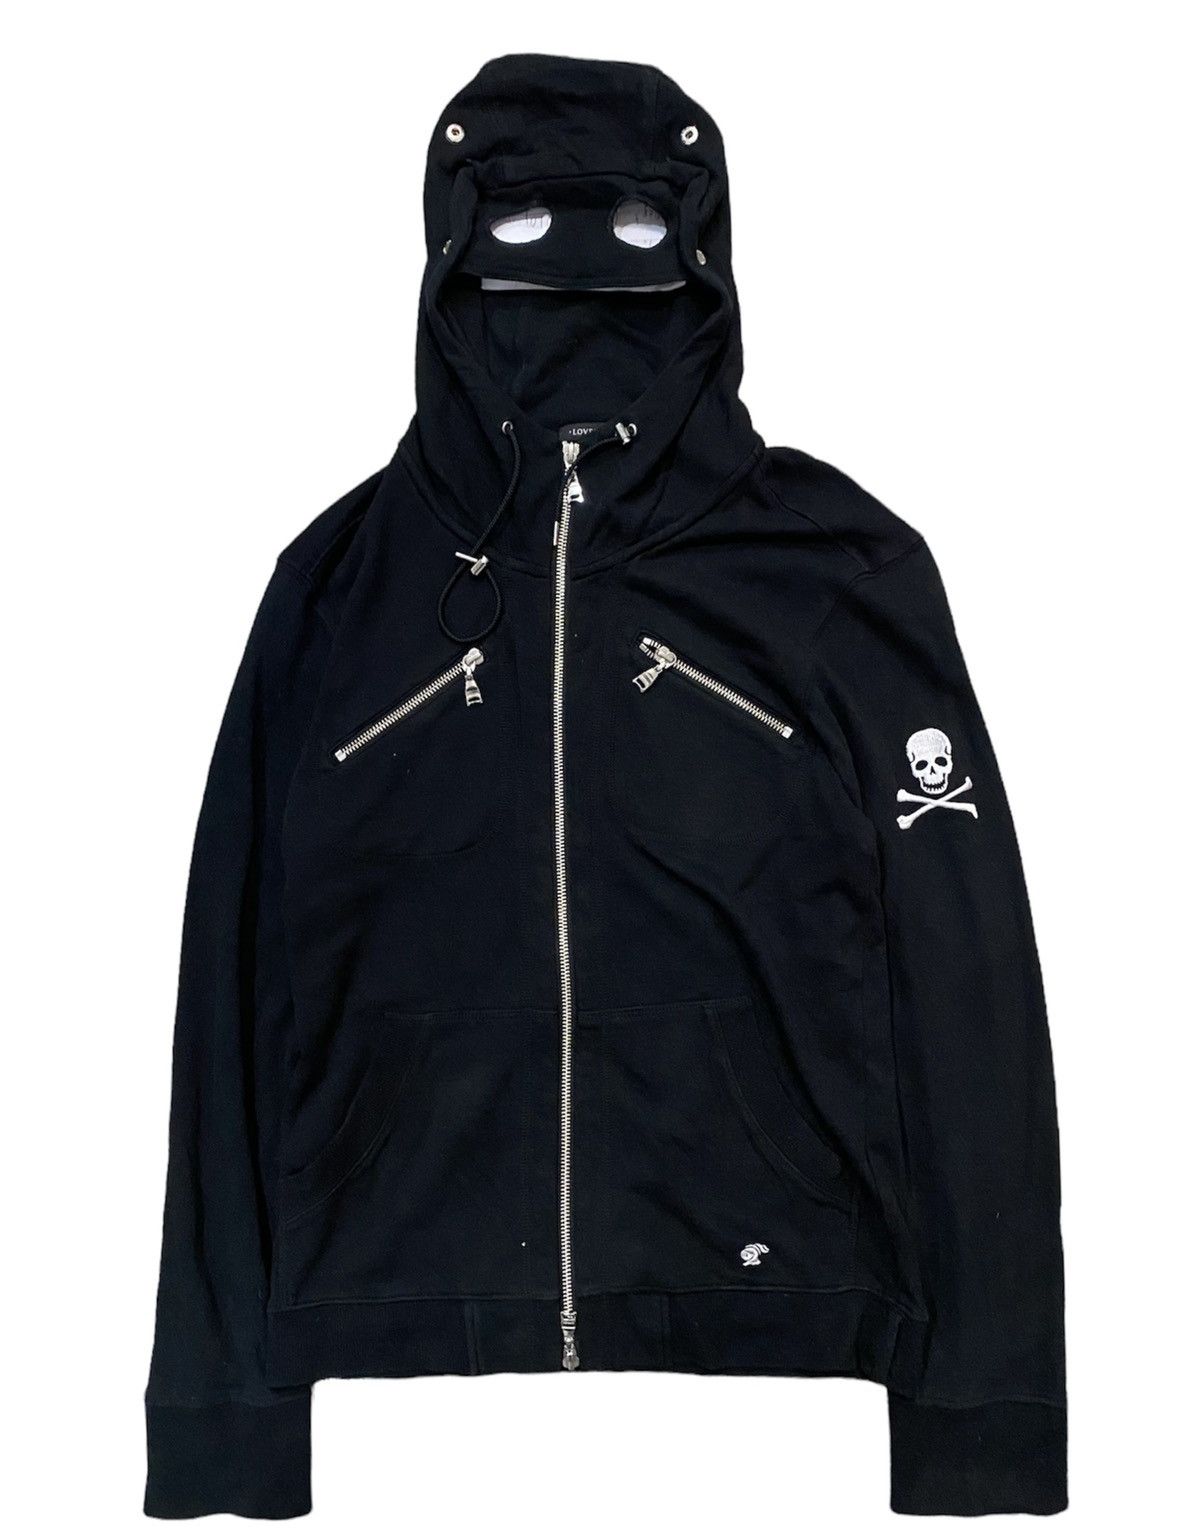 Japanese Brand Loveless Japan Google Zipper Skull hoodie | Grailed